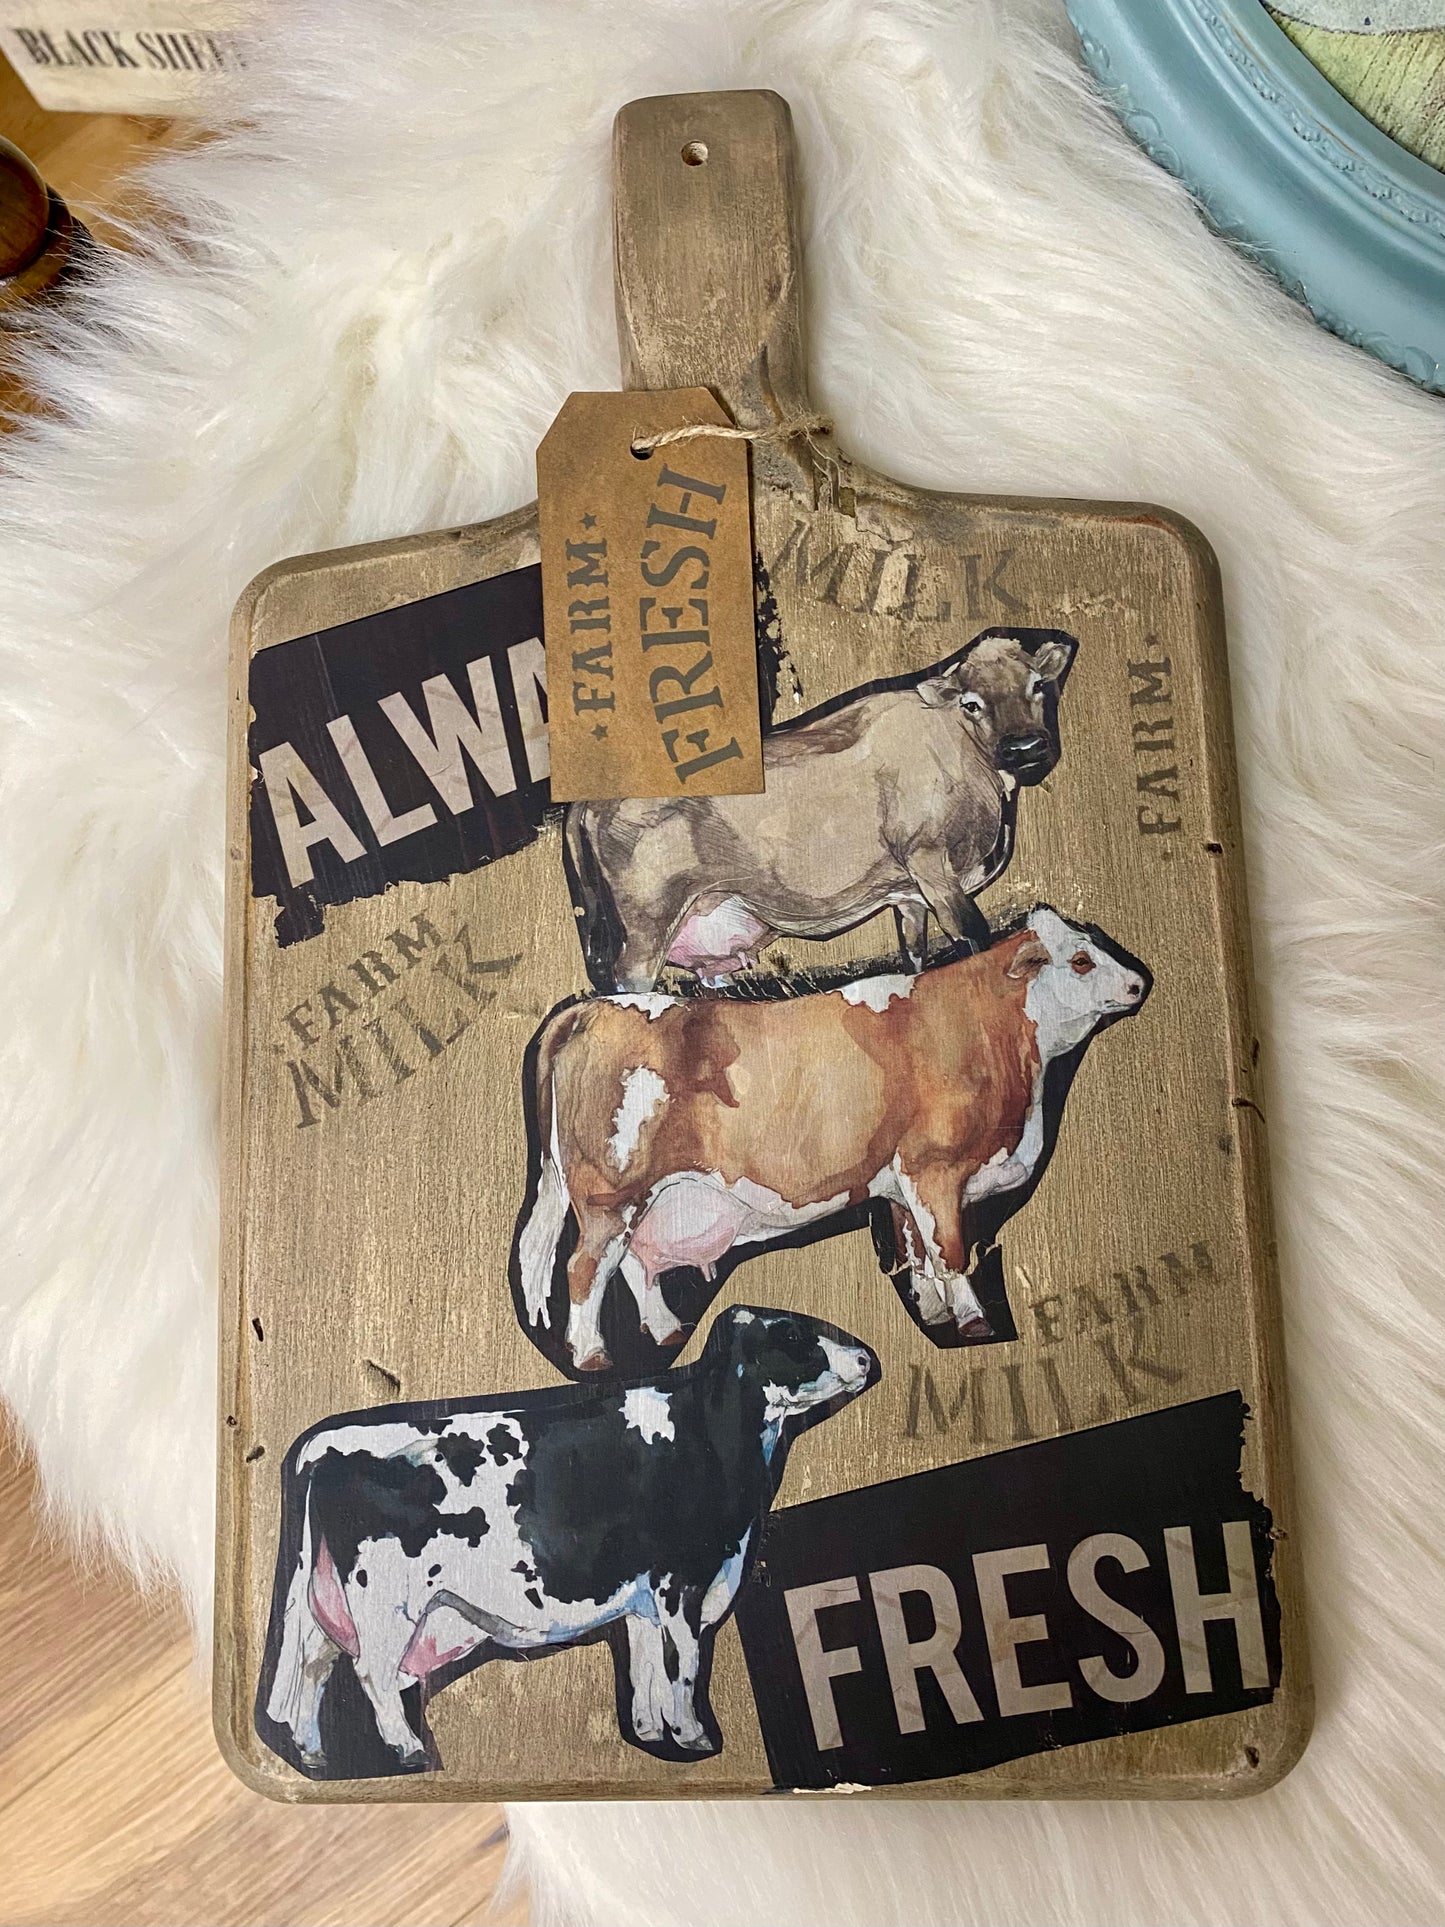 Always Fresh Cow Wooden Cutting Board Sign